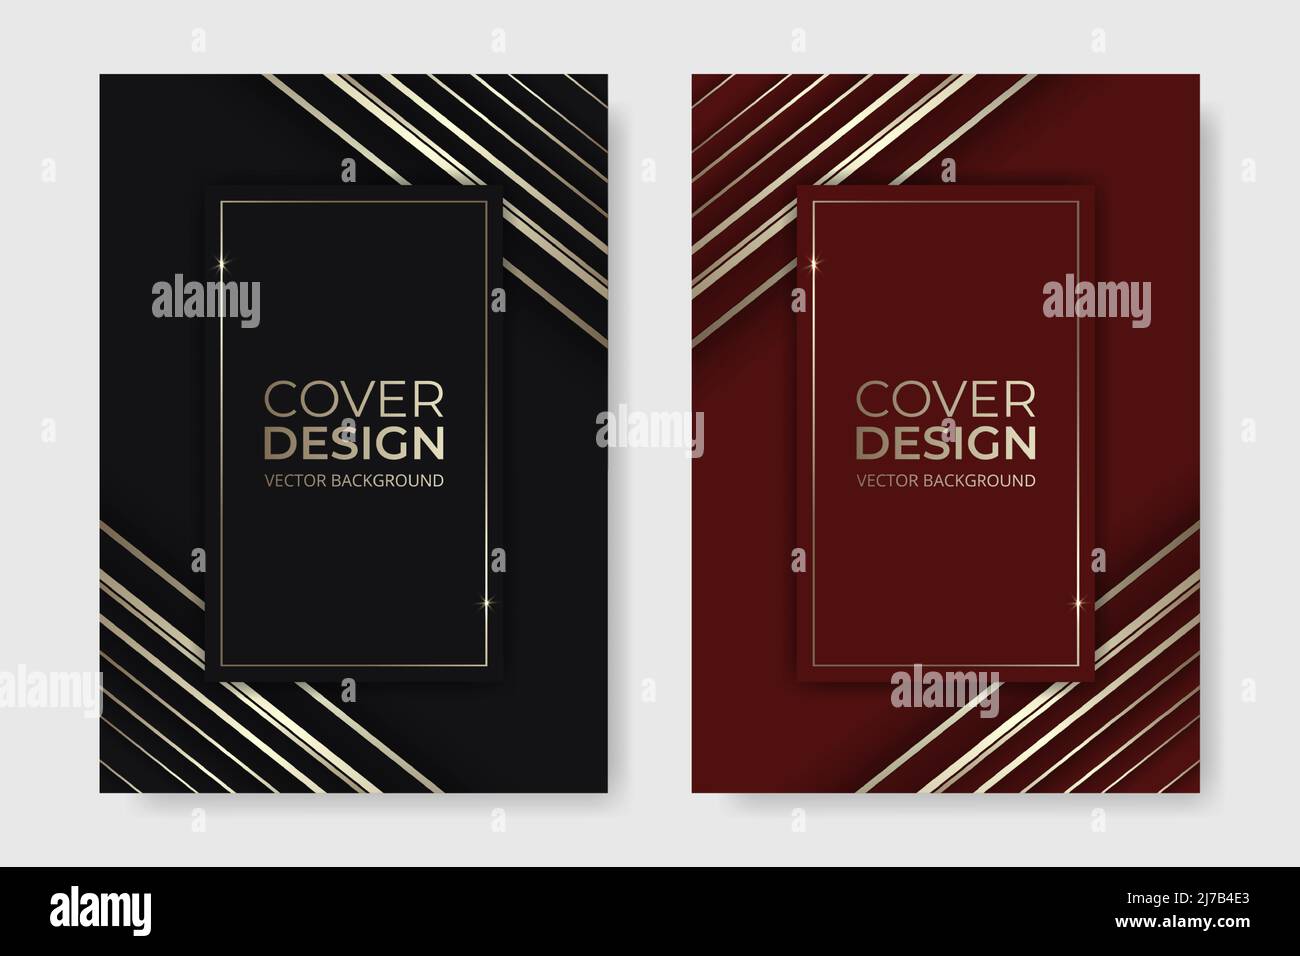 Vektor-Cover-Design. Abstrakte rot-schwarz-goldene Luxus-Broschüre im A4-Size-Flyer-Design. Vertikale Ausrichtung der Vorderseite im Format A4. Abdeckung Stock Vektor